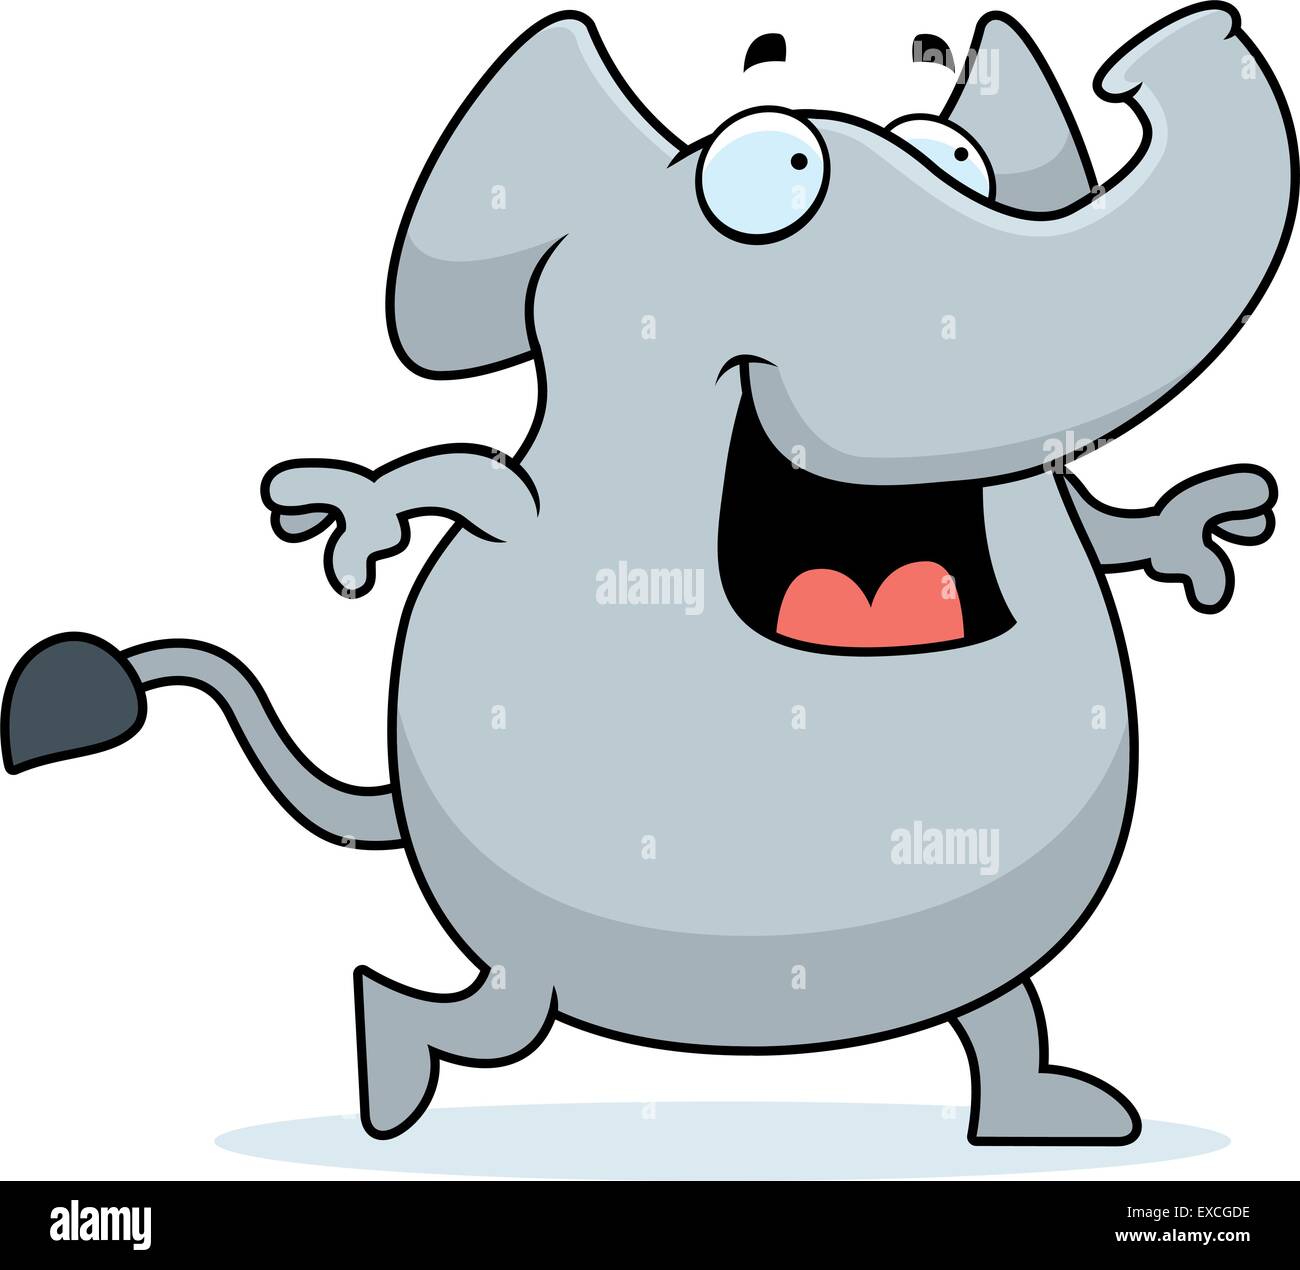 Une bonne caricature elephant walking et souriant. Illustration de Vecteur